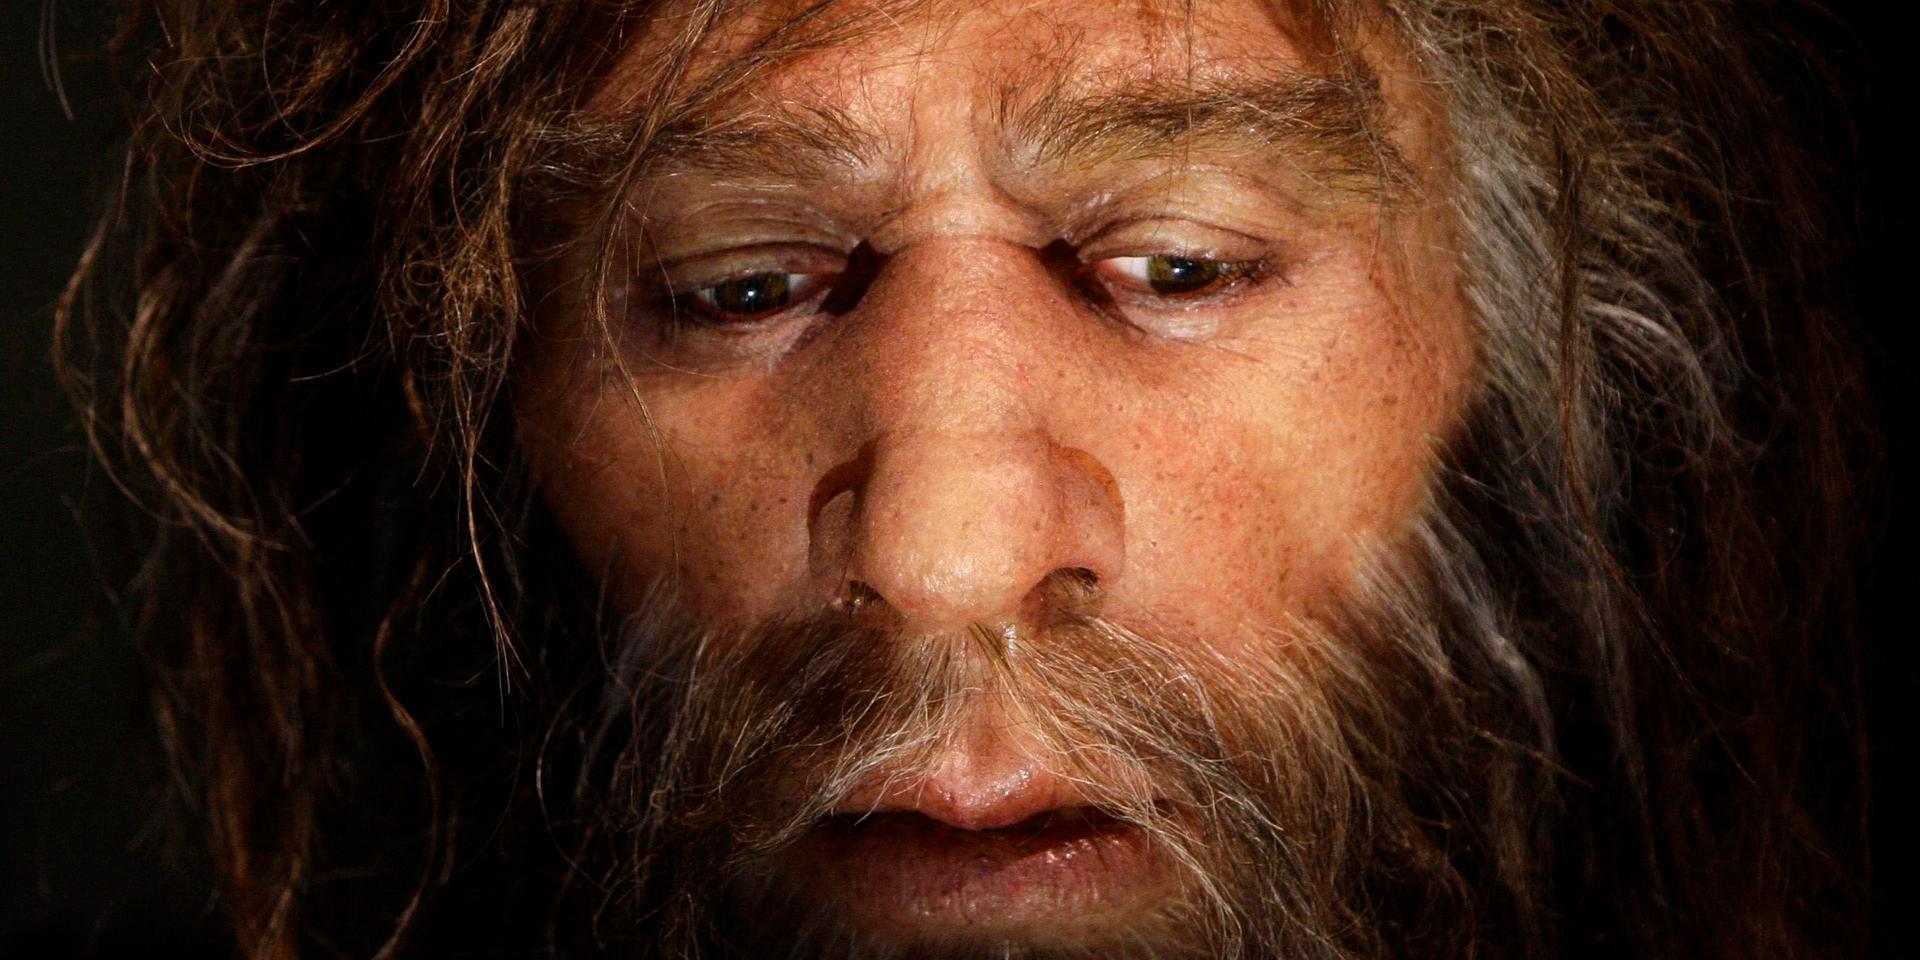 Hur denisovanerna såg ut är okänt, men troligen var de relativt lika neandertalarna utseendemässigt. Bild av hur man tror att neandertalarna såg ut, från Neandertalmuseet i Krapina, Kroatien.